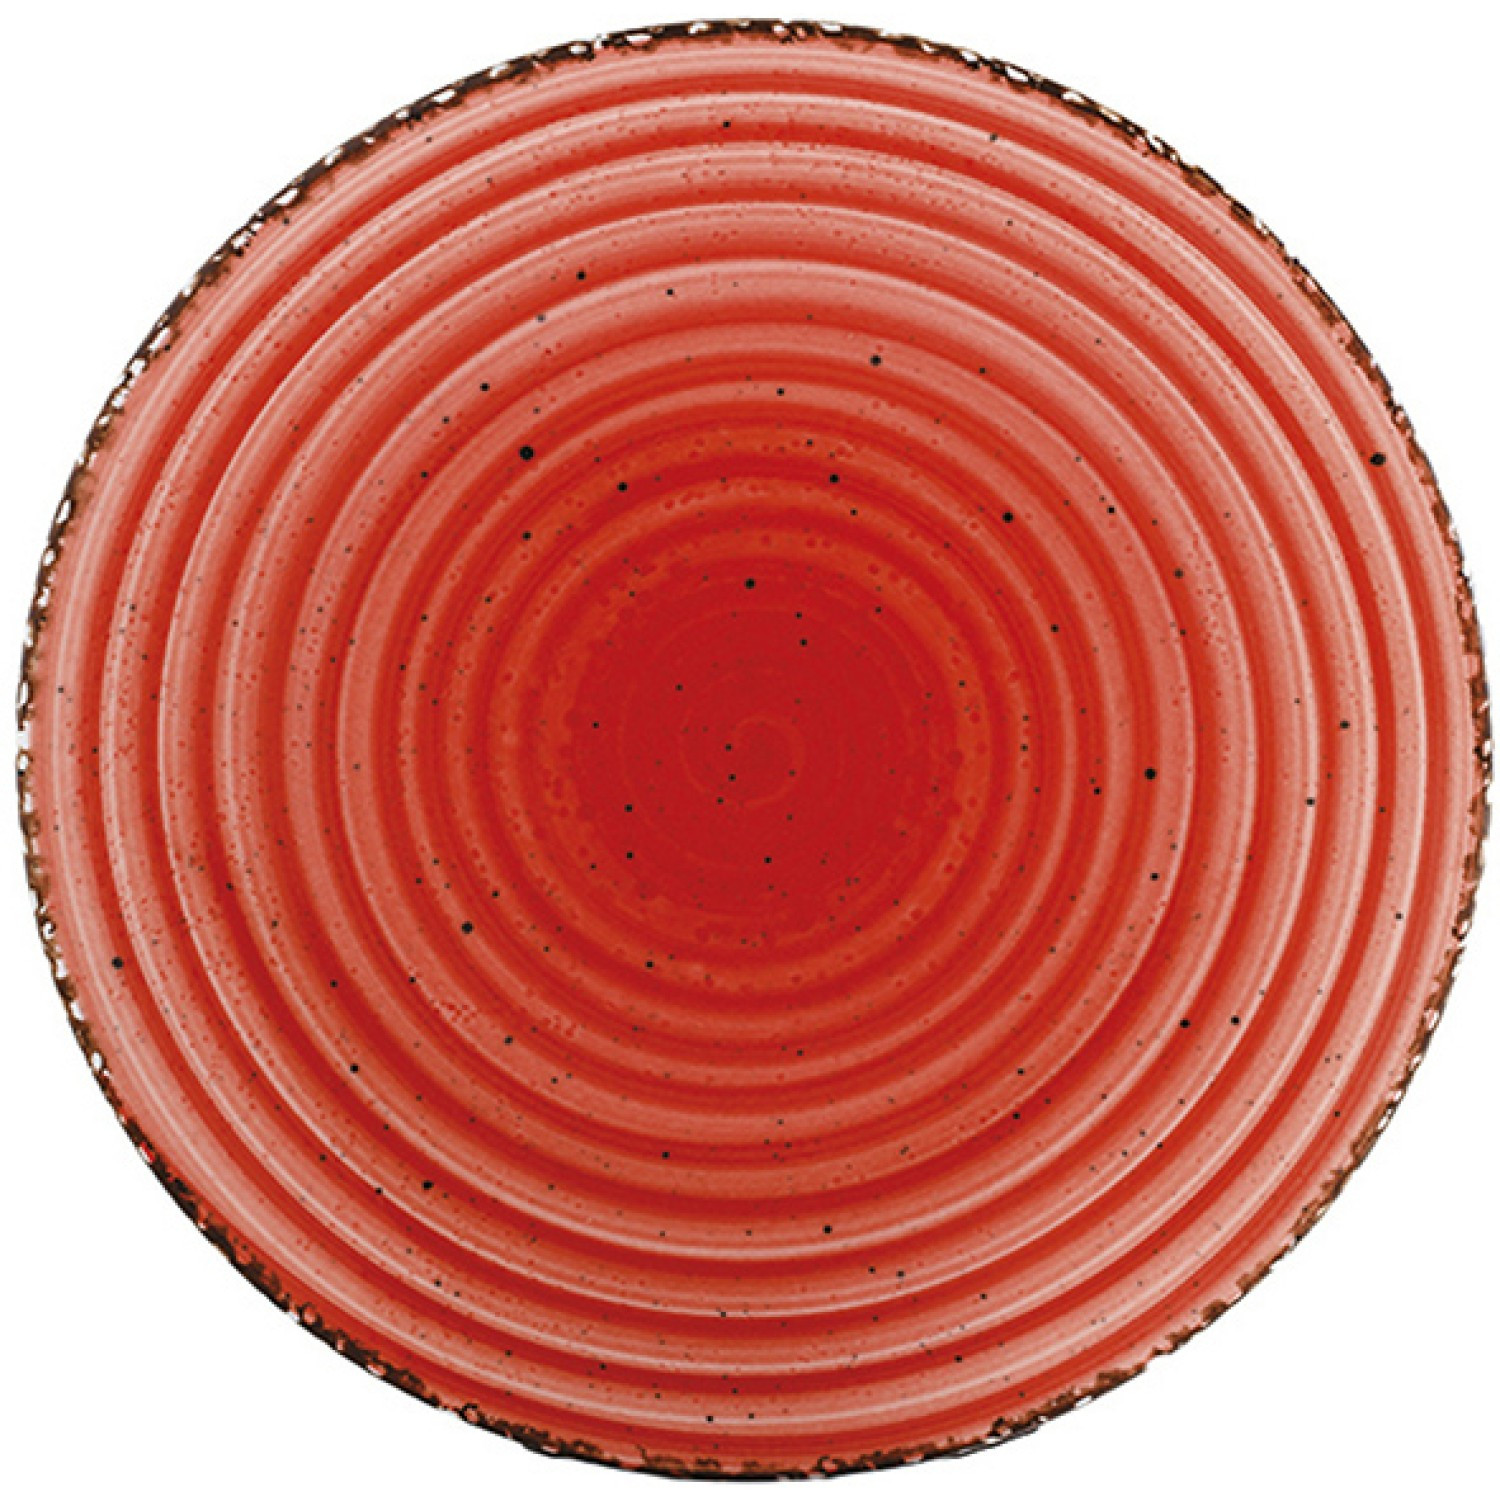 Πιάτο Ρηχό Πορσελάνης Red Avanos 27cm Gural